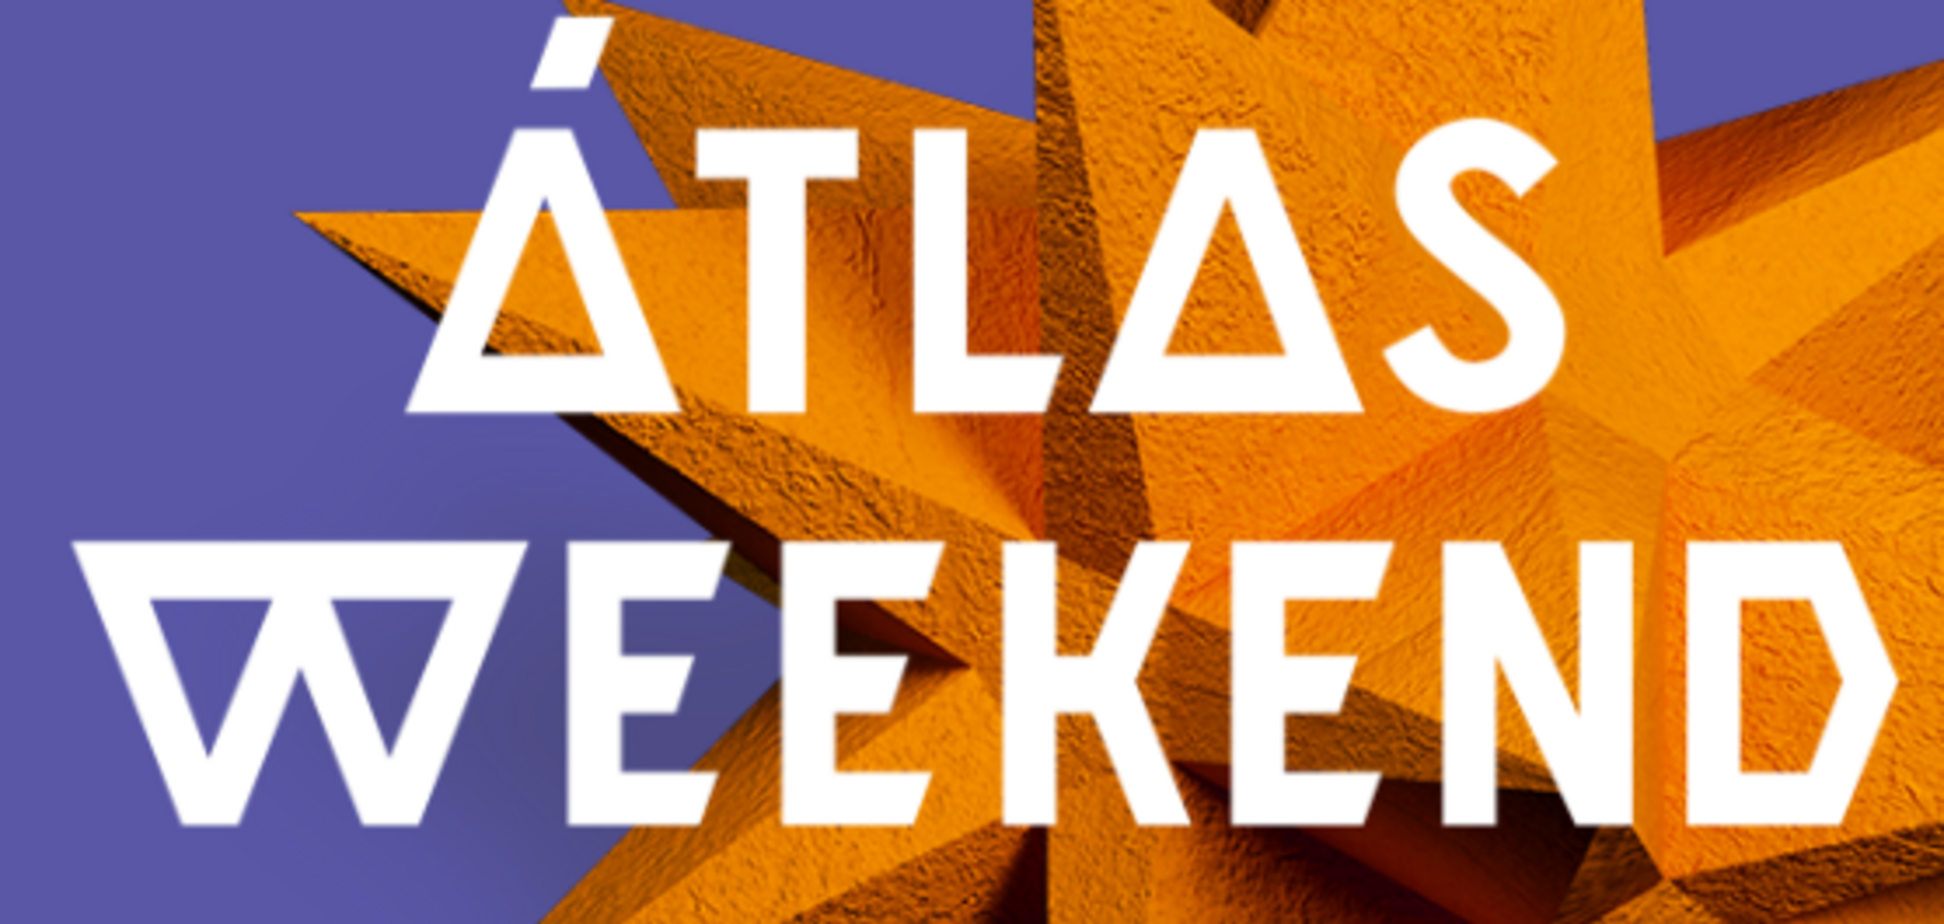 Atlas Weekend-2019: як грамотно відриватися на музичних фестивалях